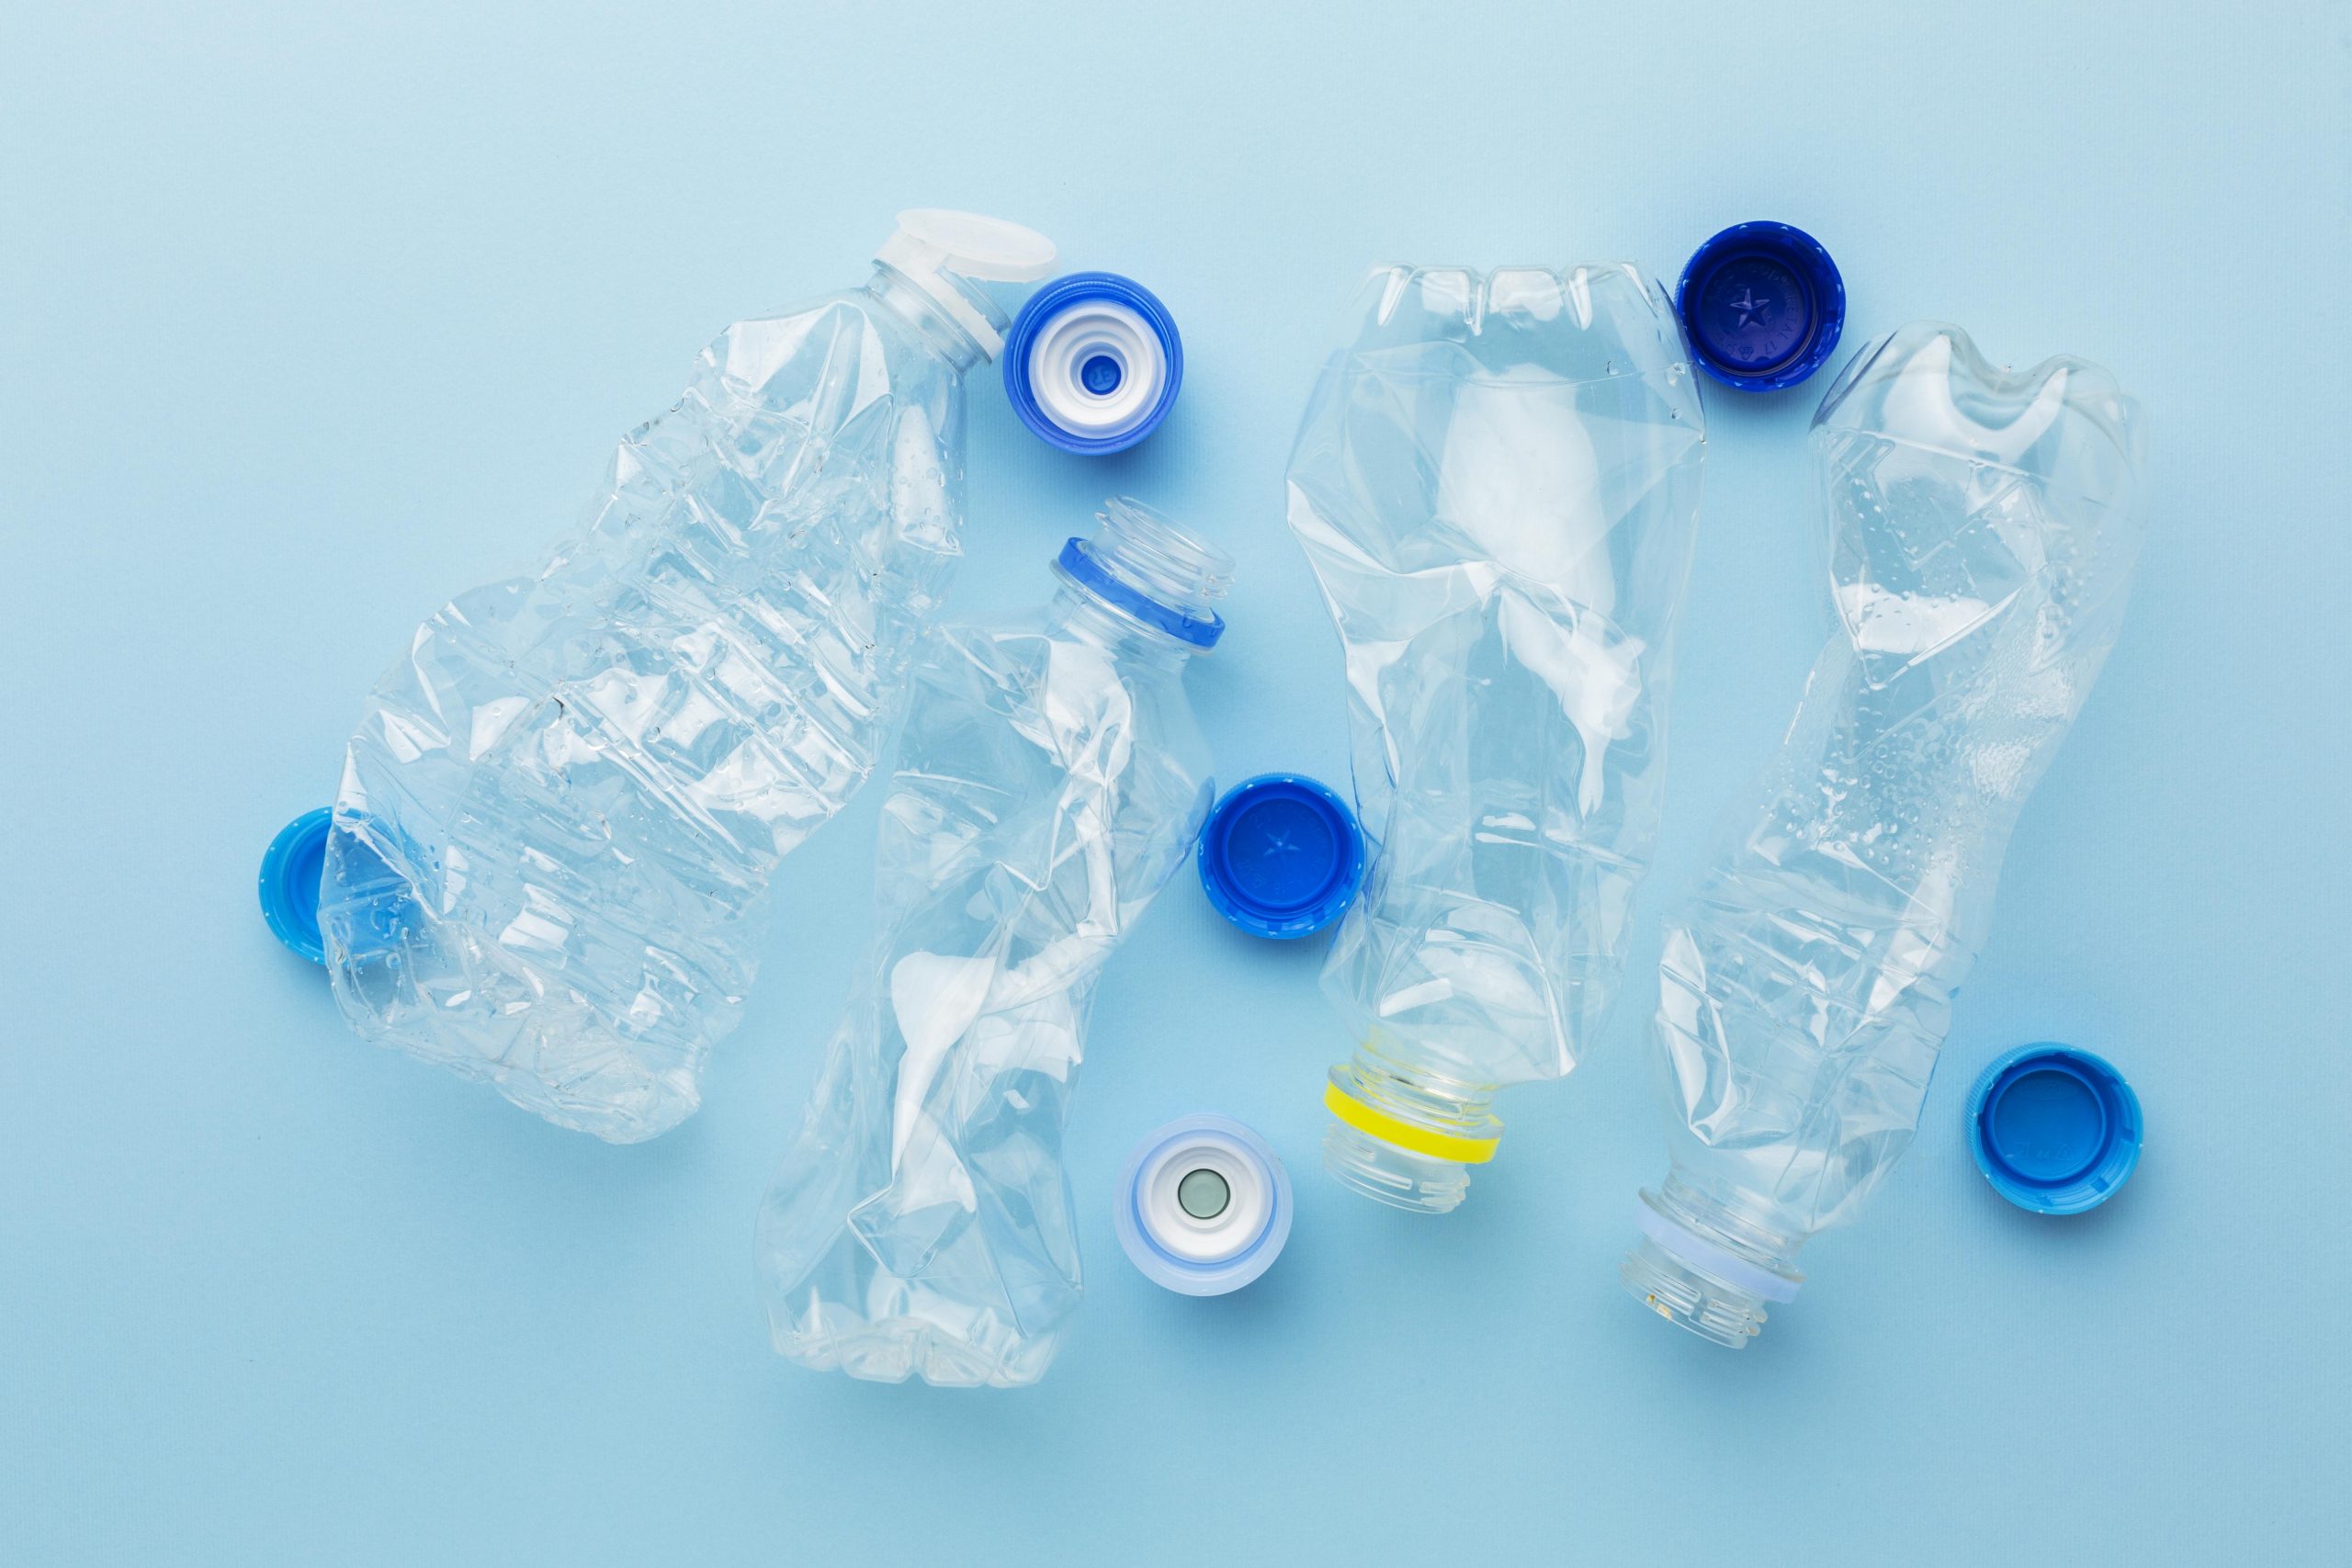 Riciclo creativo: riutilizzare le bottiglie di plastica